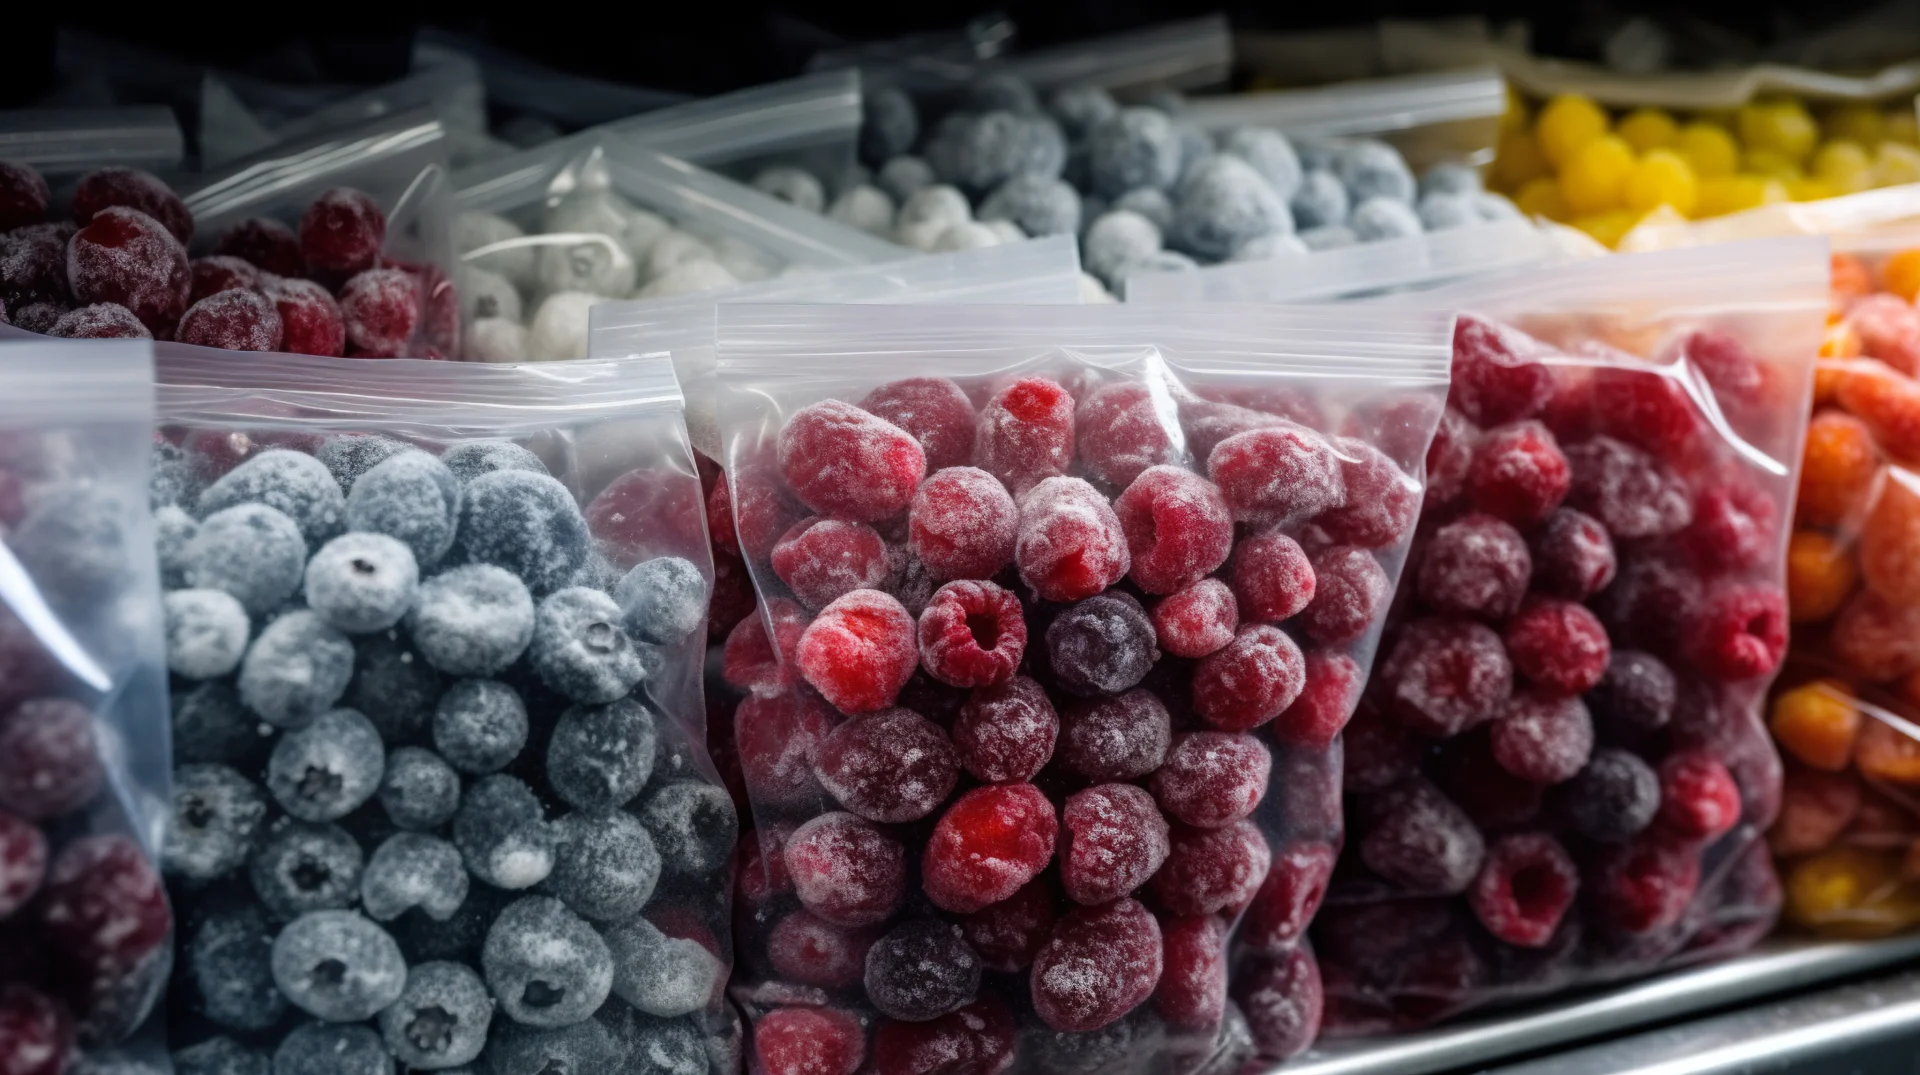 frozen-berries-plastic-bags-shelf